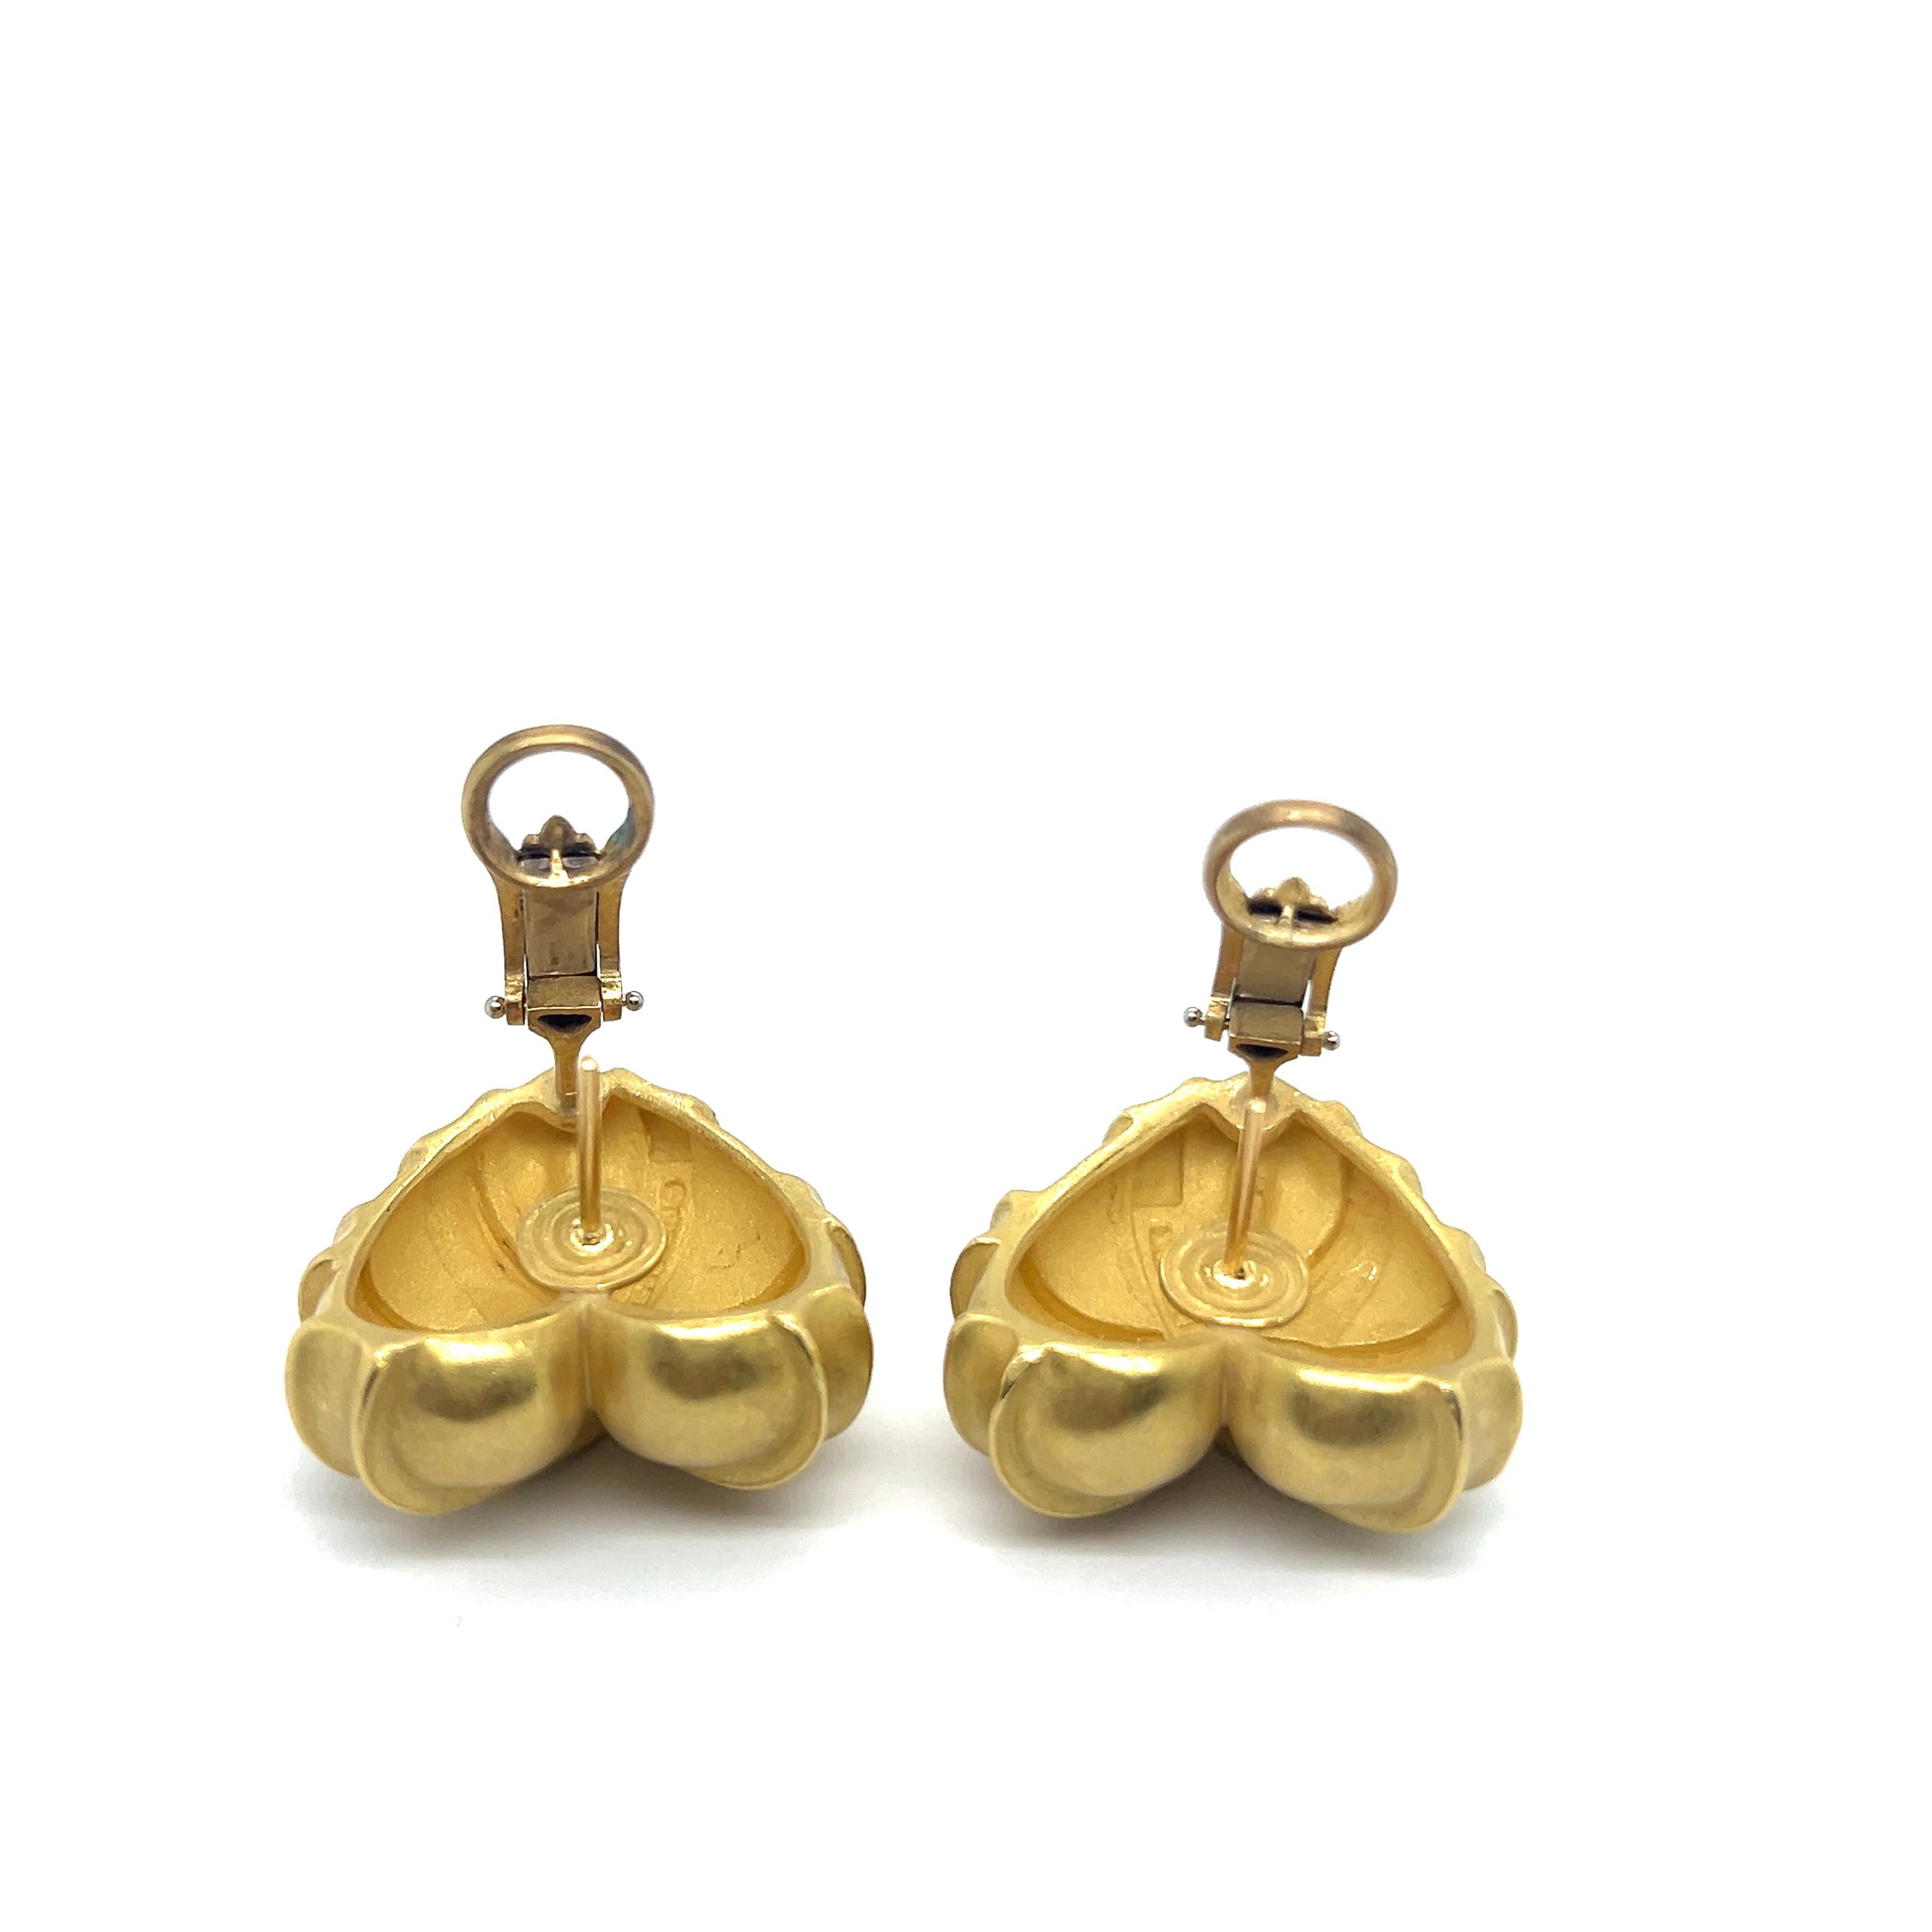 Heart-shaped Earrings in 18 Karat Yellow Gold by Kieselstein-Cord For Sale 3